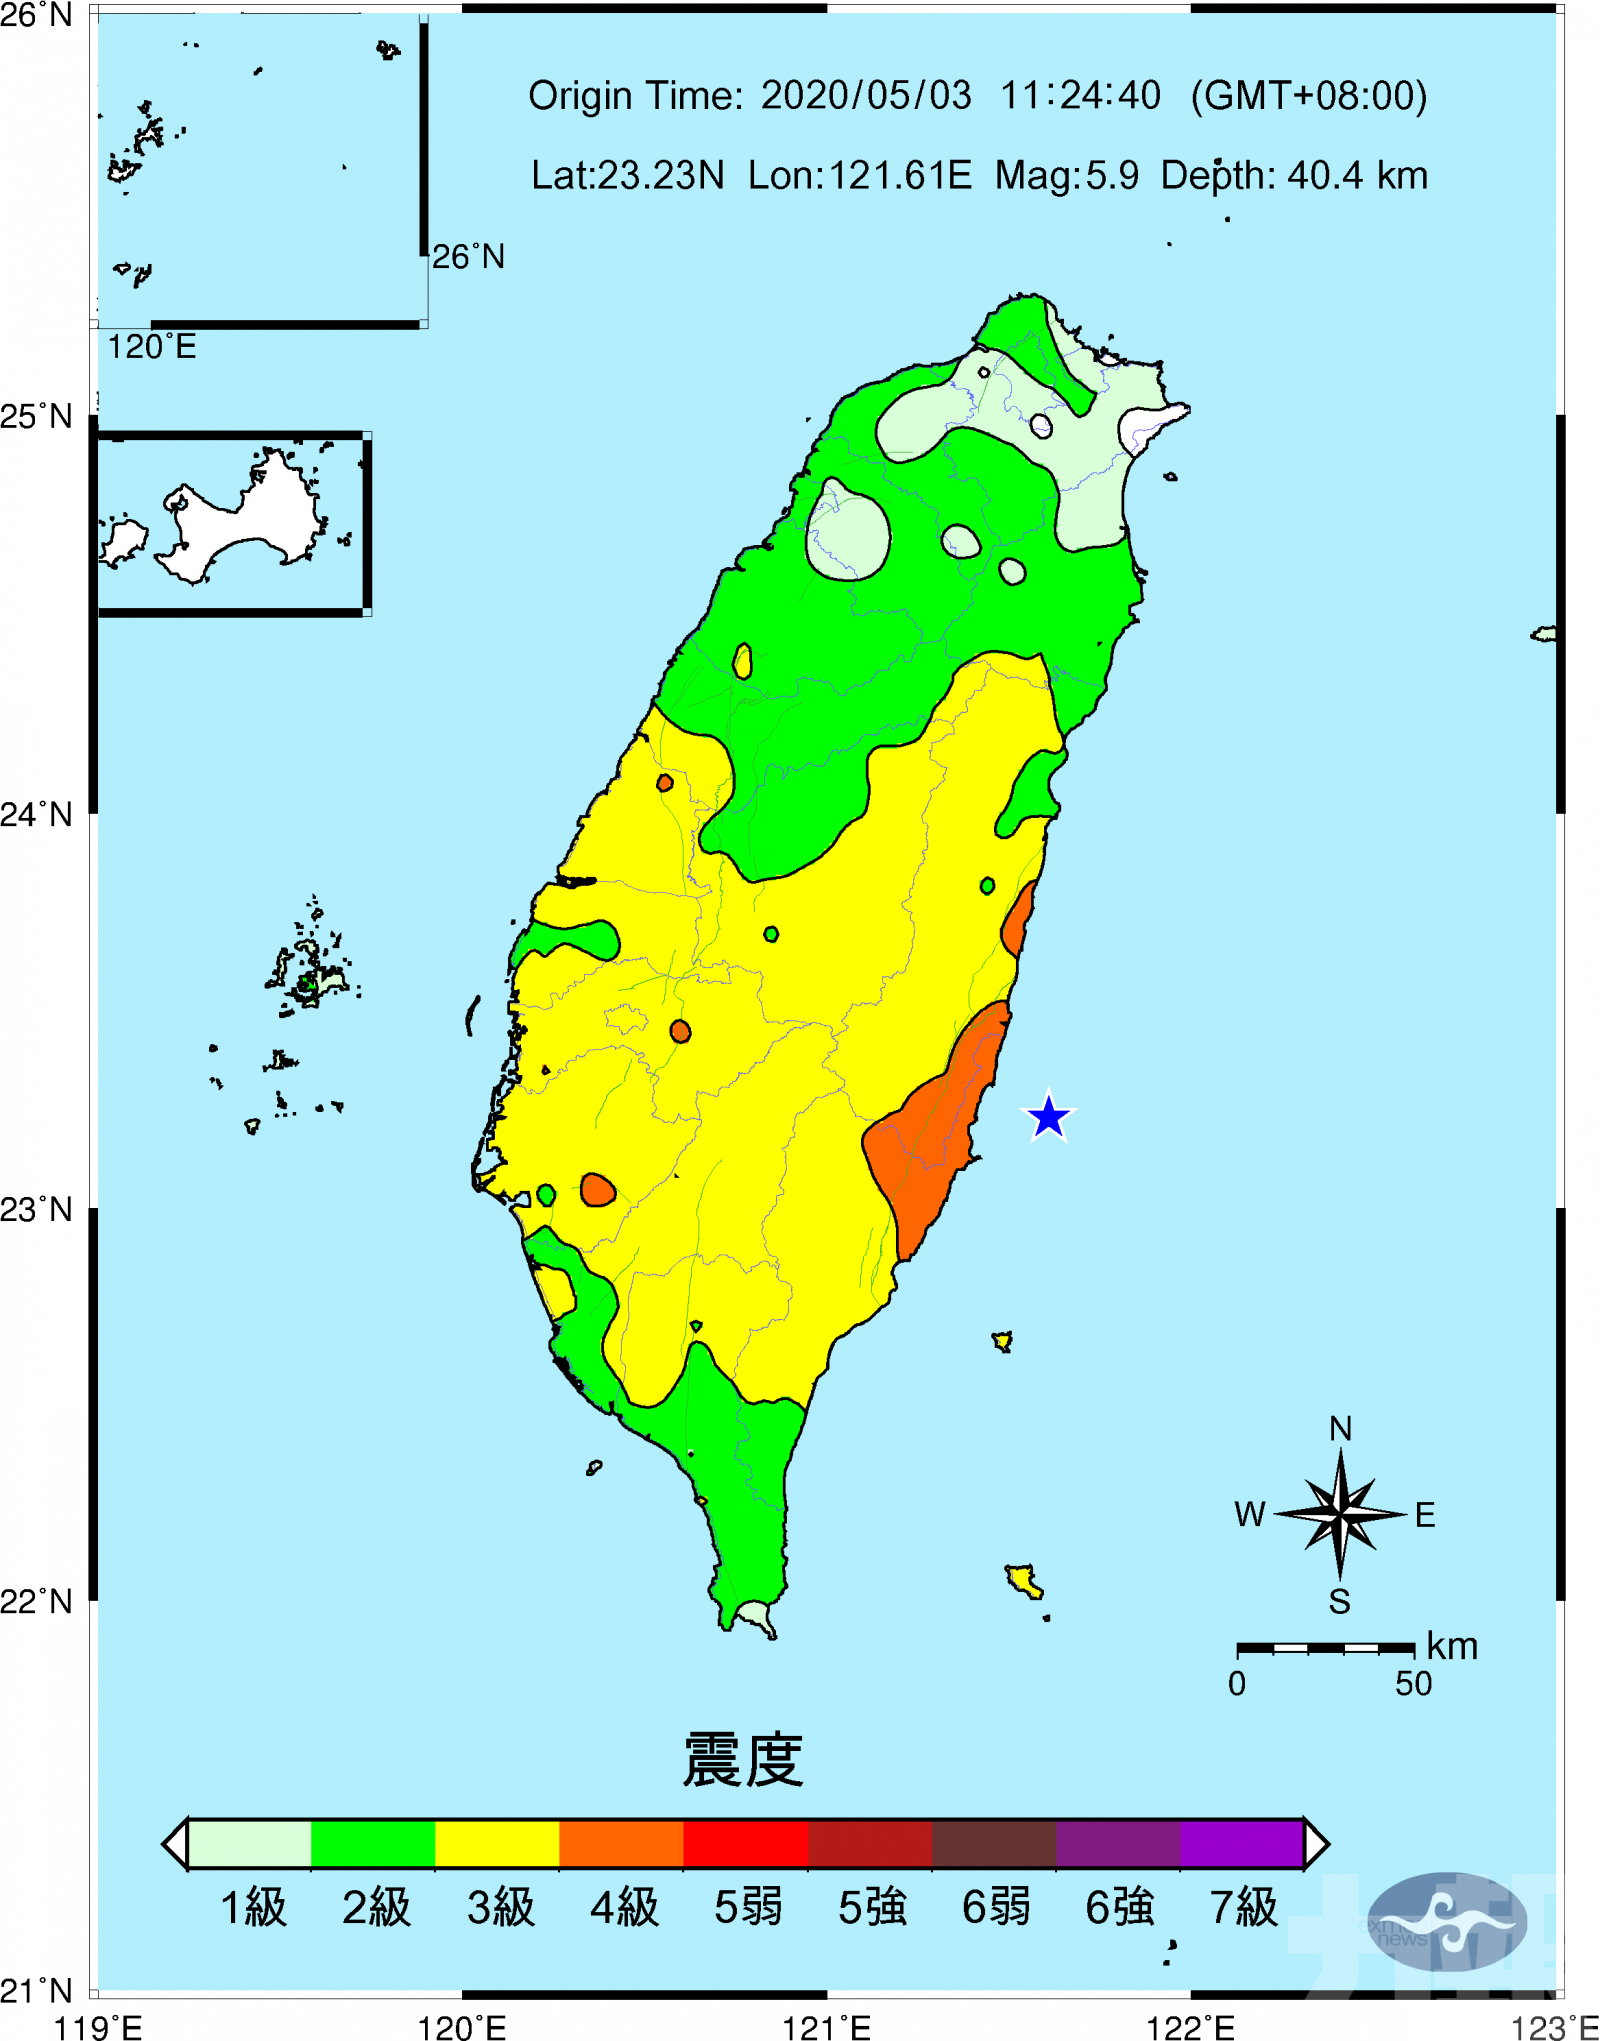 台東海域發生5.9級地震